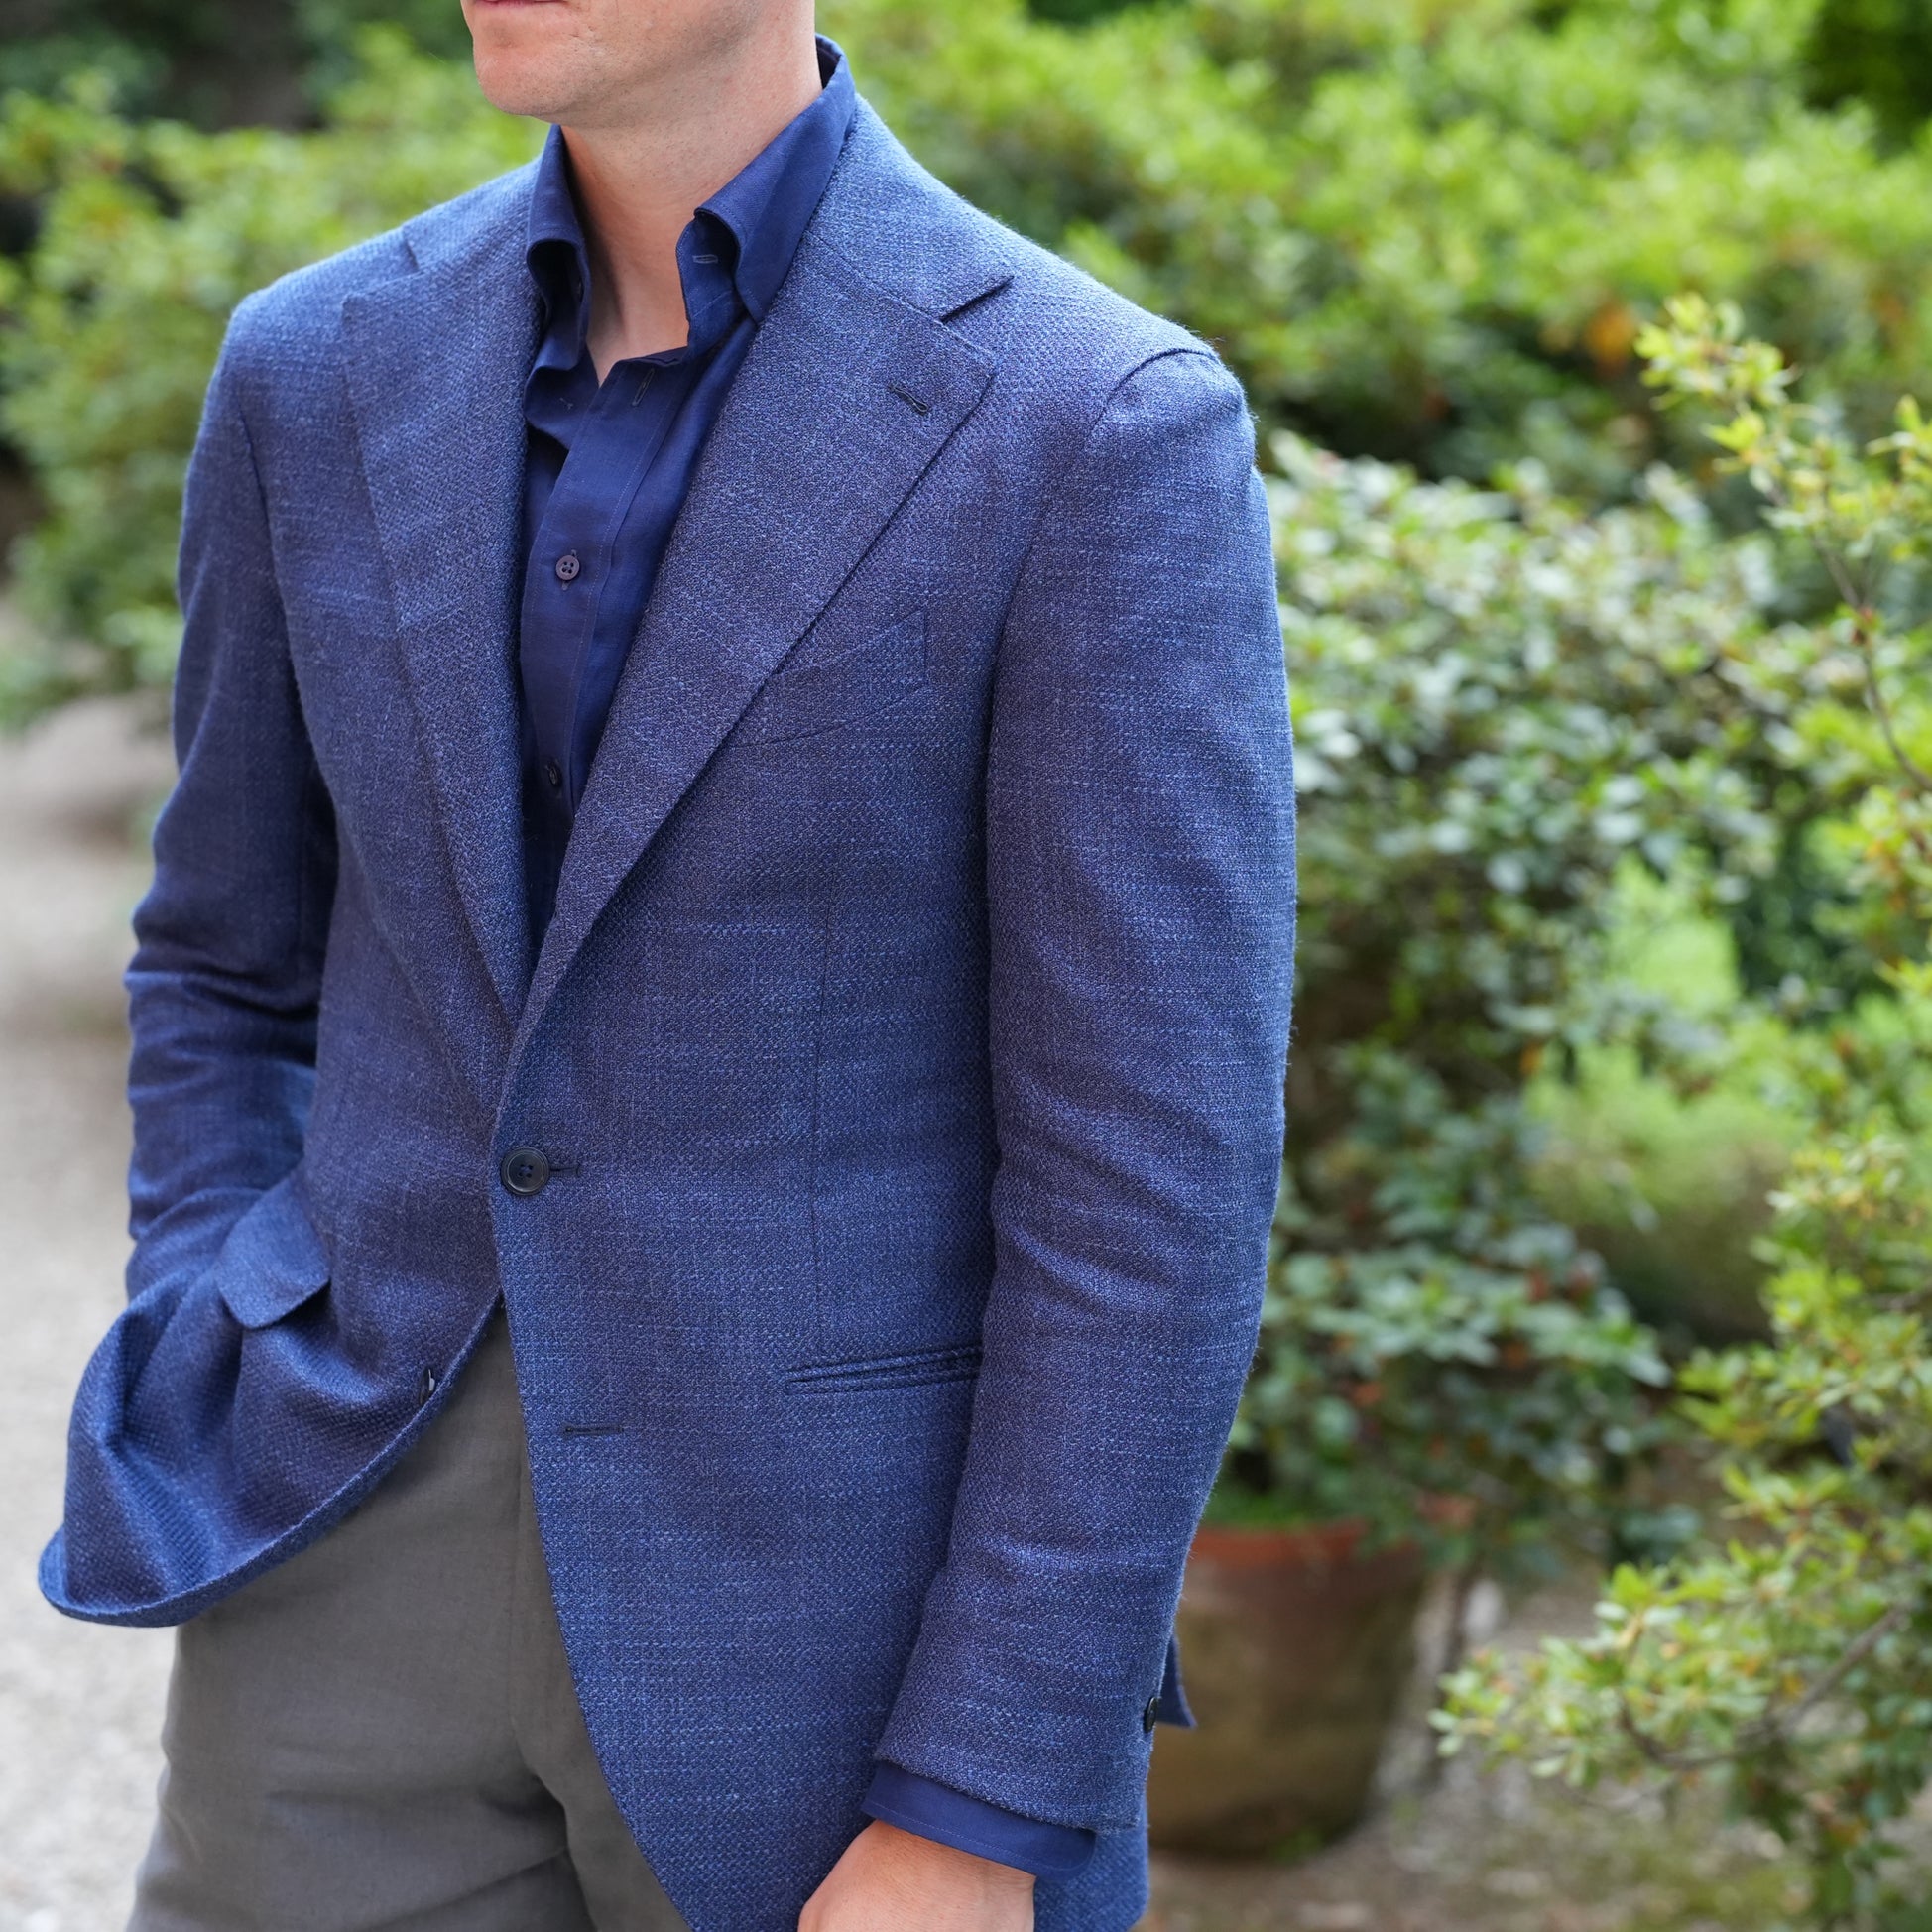 Derek in blue summer jacket, gray linen trousers and navy linen shirt